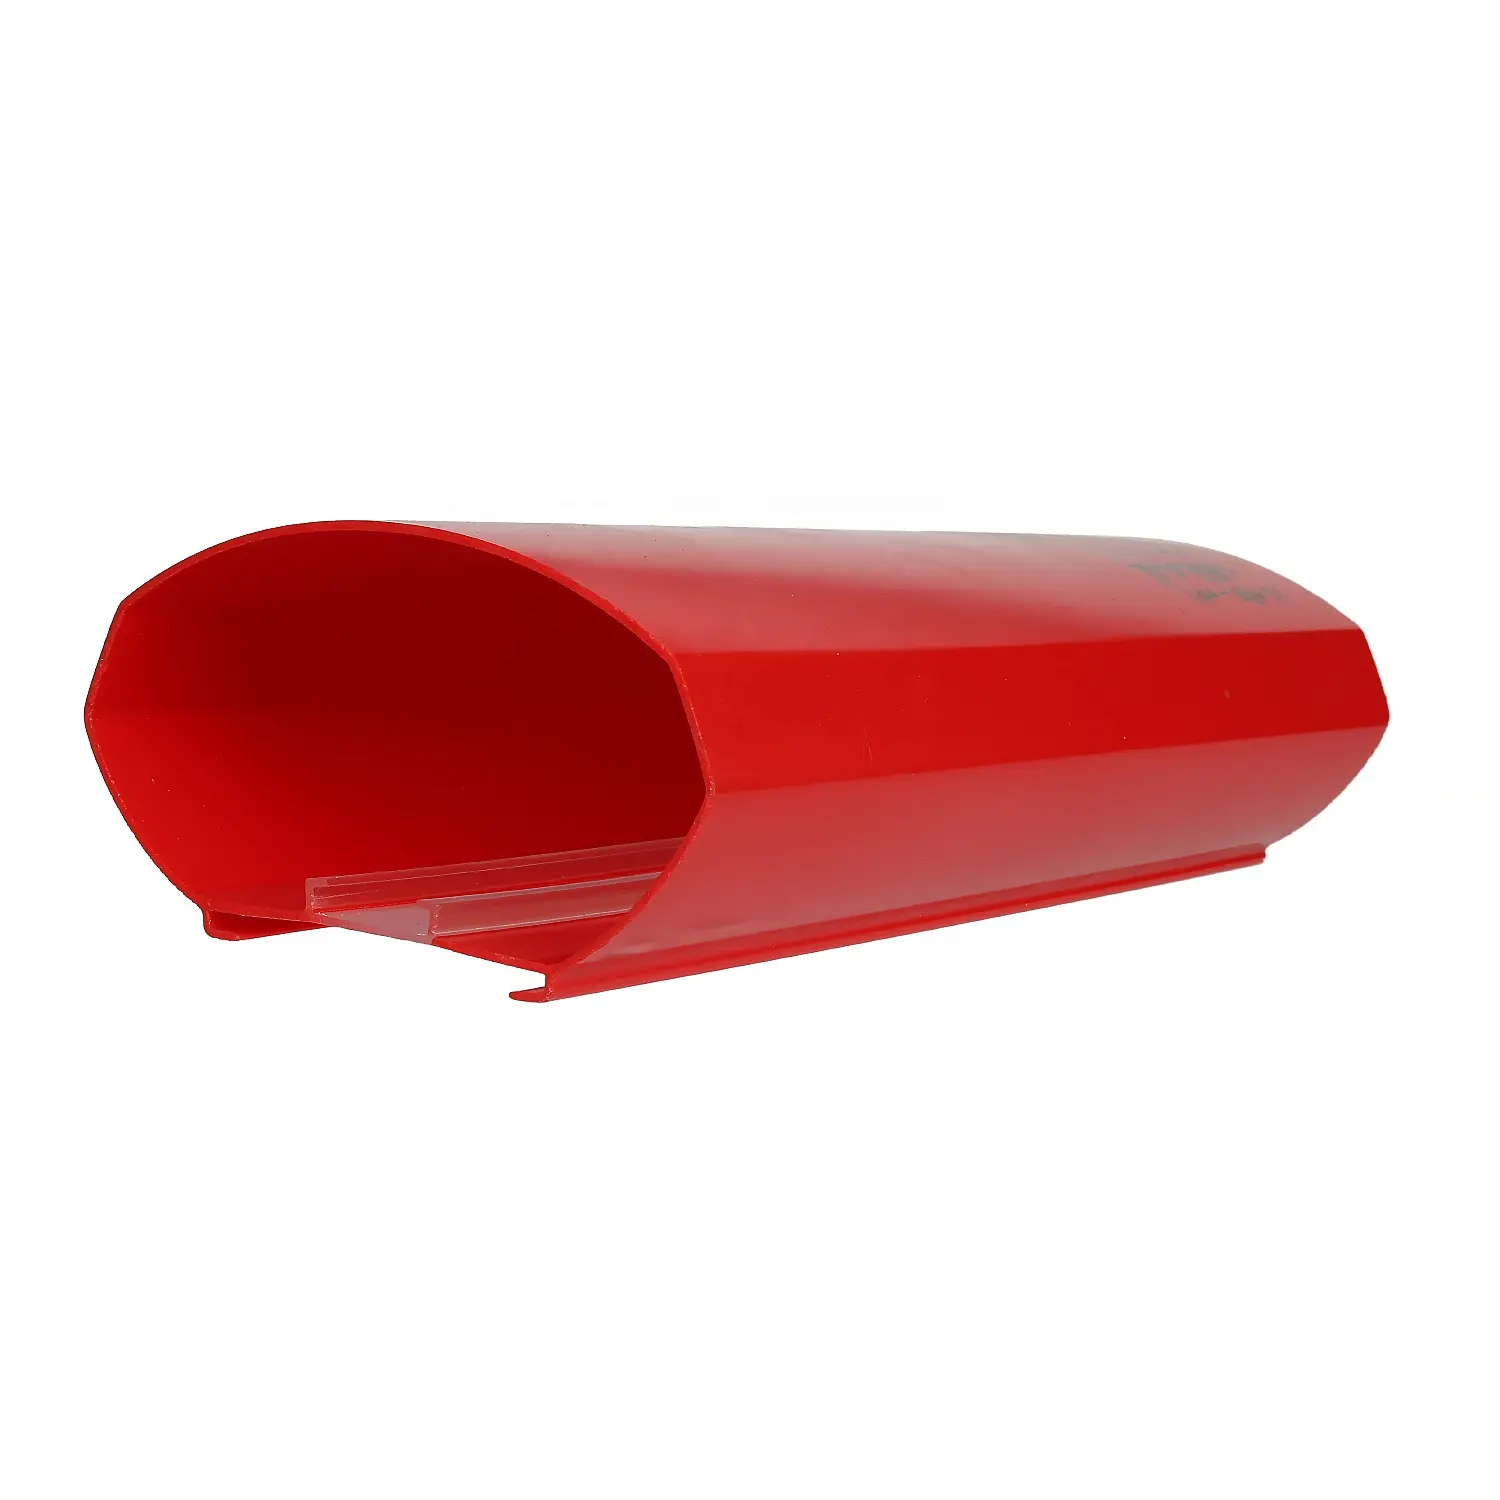 Раковина красный акриловый коэкструзионный профиль лампы абажур PMMA PC PVC ABS поликарбонат пластик для вывесок бензозаправочная станция